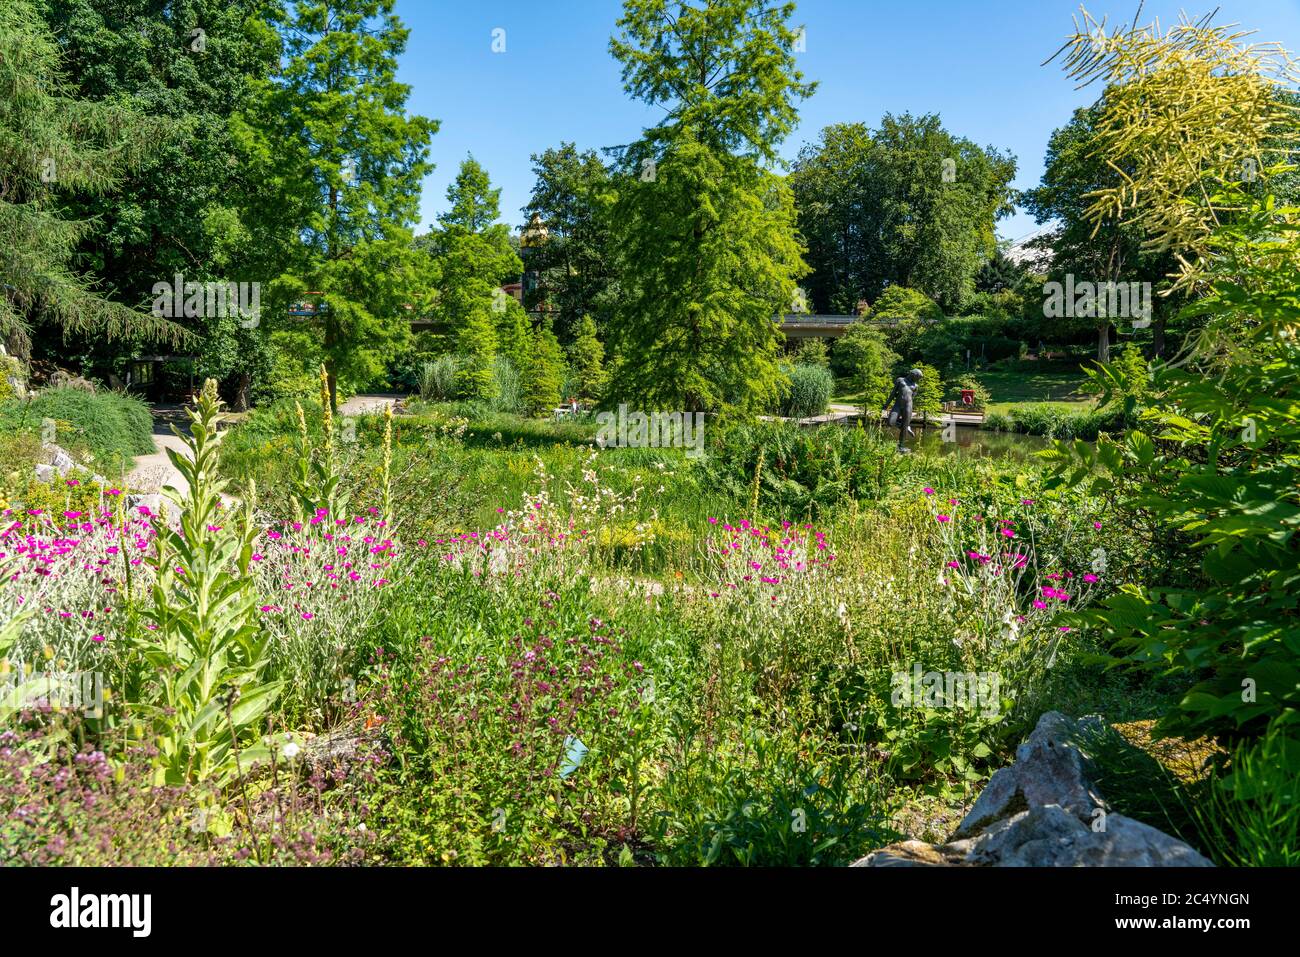 Grugapark, Essen, Botanischer Garten, Alpinumgebiet, Park für Freizeit und Erholung, NRW, Deutschland Stockfoto